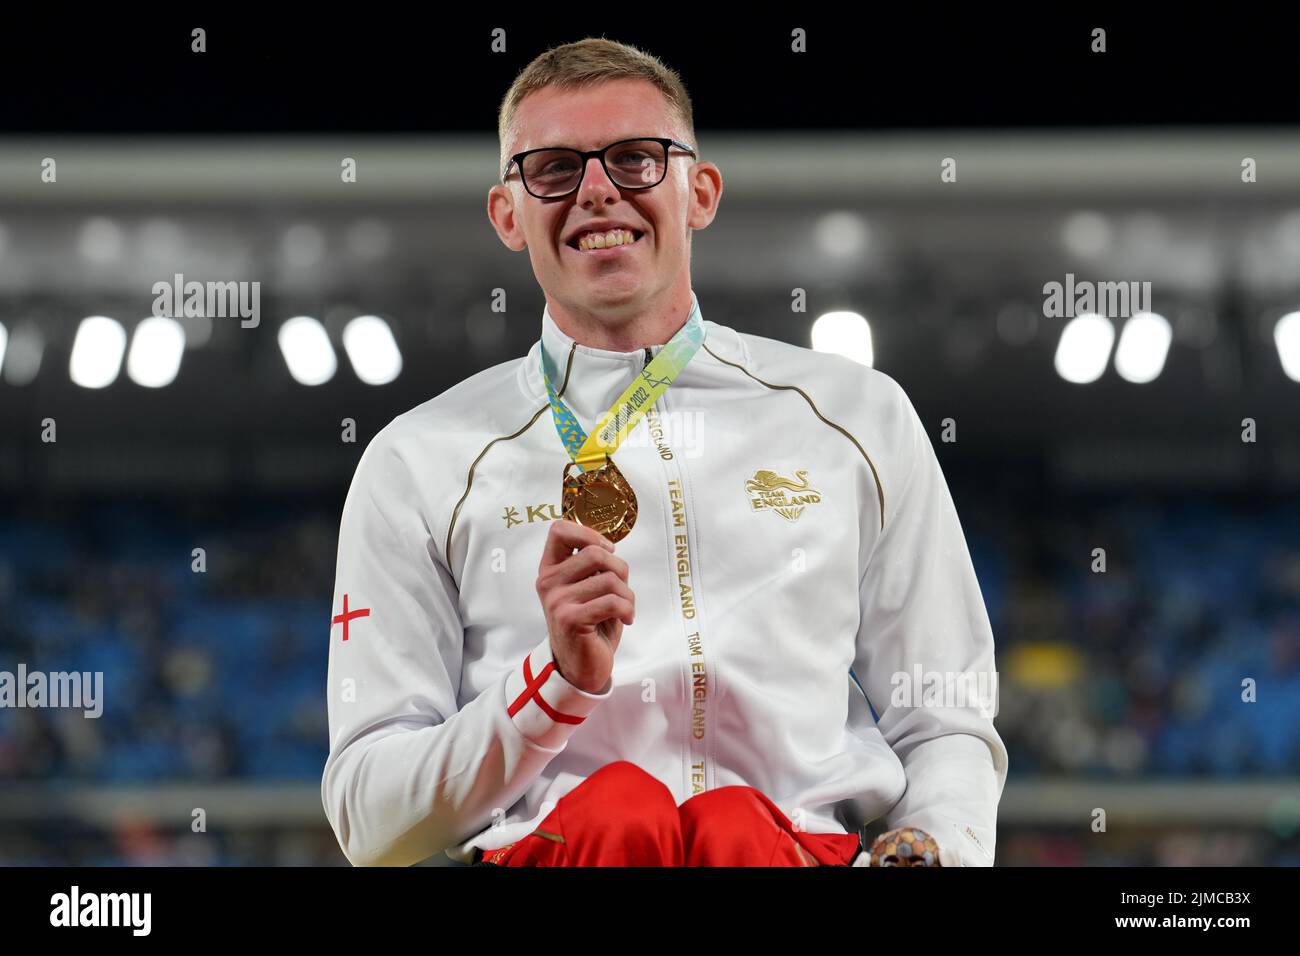 Nathan Maguire d’Inghilterra con la sua medaglia d’oro dopo la finale maschile del T53/54 1500m all’Alexander Stadium l’otto giorno dei Giochi del Commonwealth del 2022 a Birmingham. Data foto: Venerdì 5 agosto 2022. Foto Stock